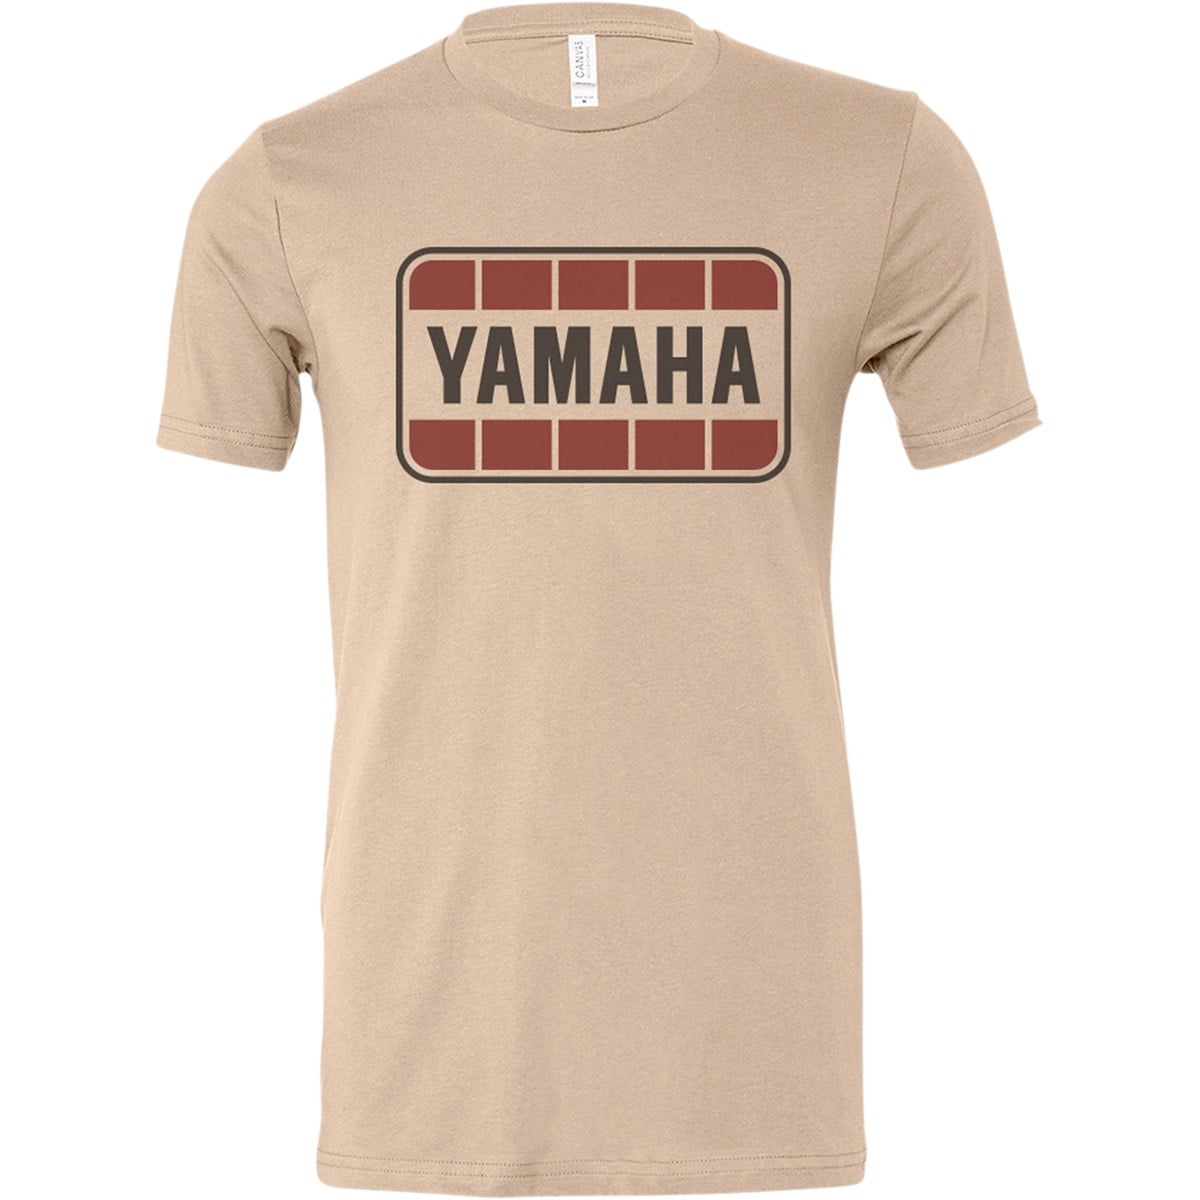 Yamaha Men's T-Shirts